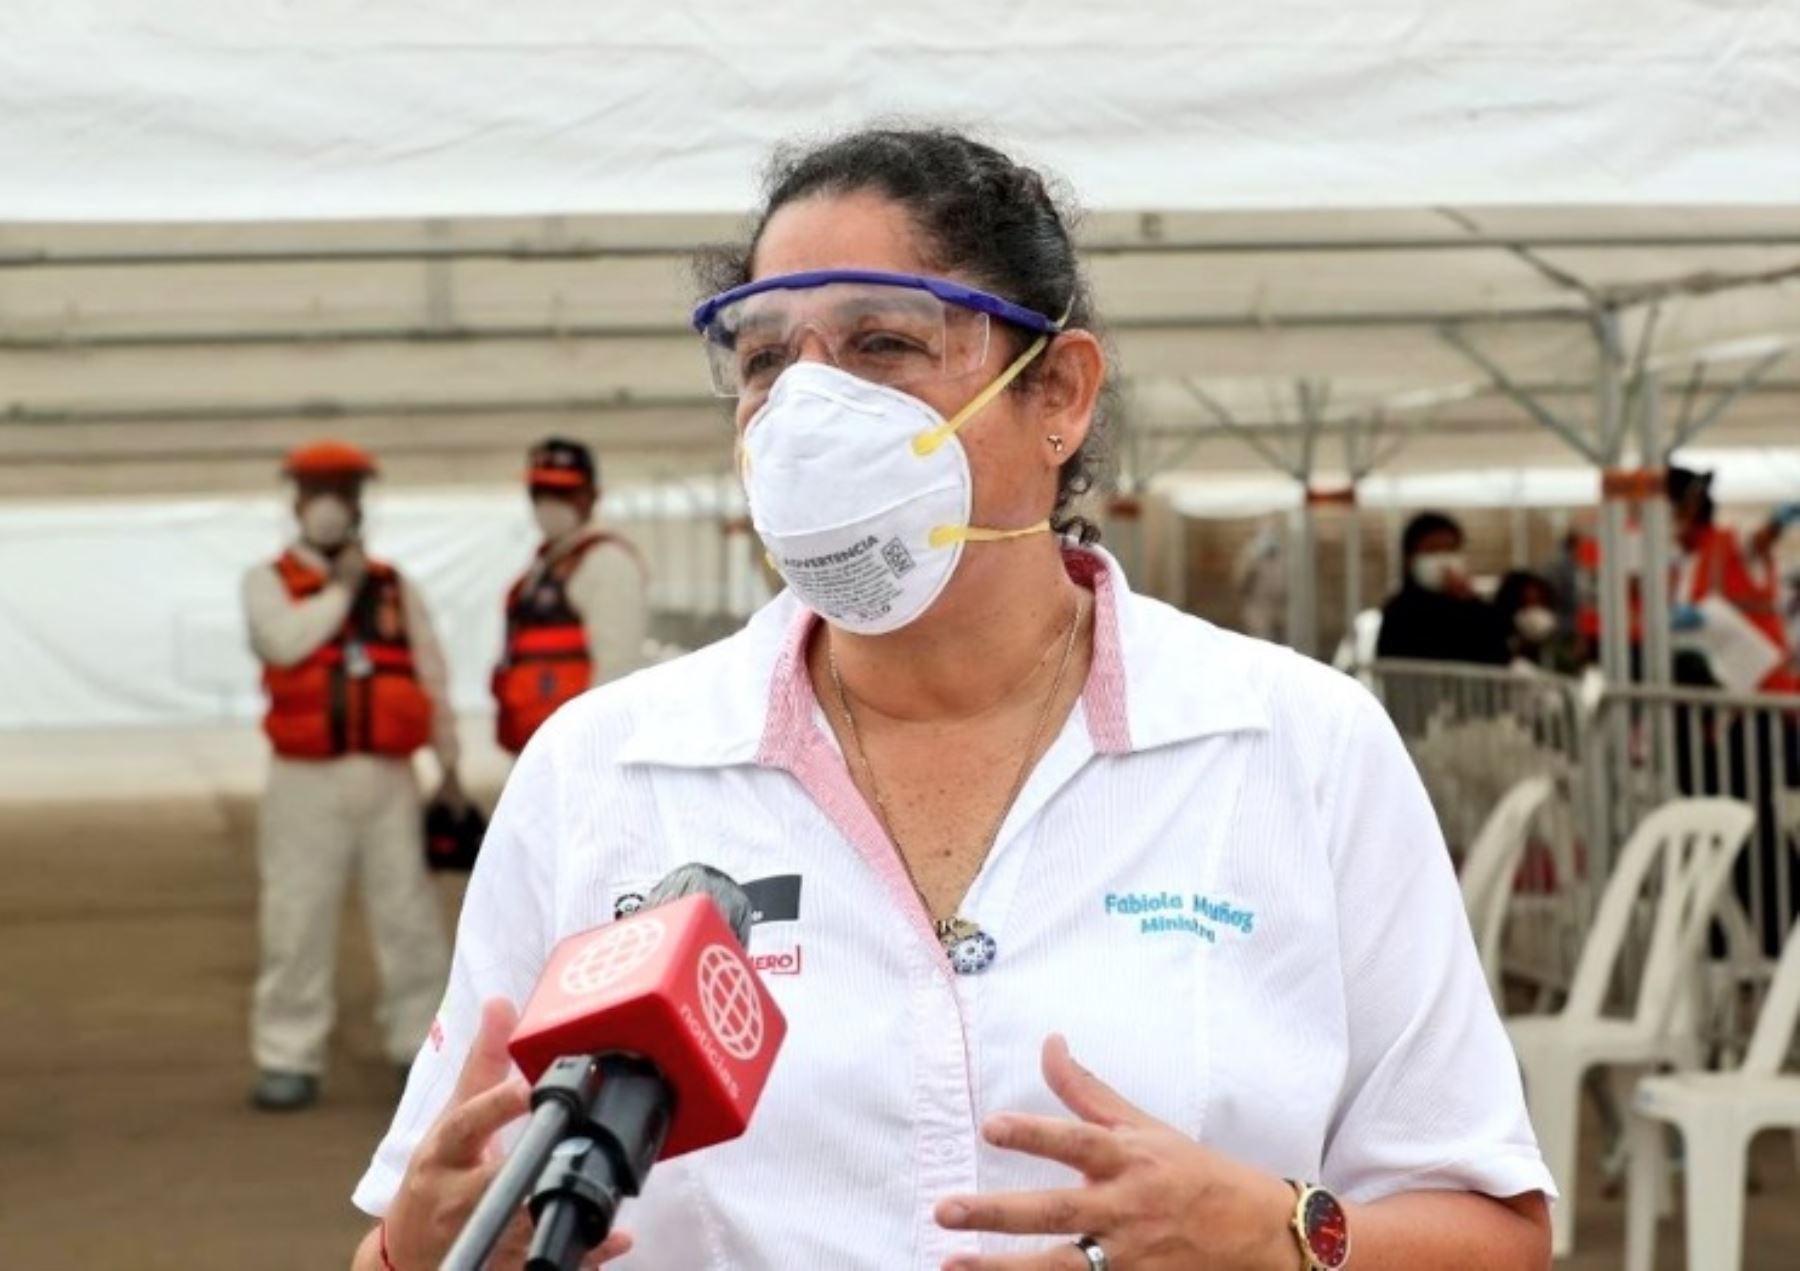 La ministra del Ambiente, Fabiola Muñoz, informó que se prevé trasladar a los 300 ancashinos varados en Puente Piedraa un albergue para que cumplan la cuarentena. Foto: ANDINA/Difusión